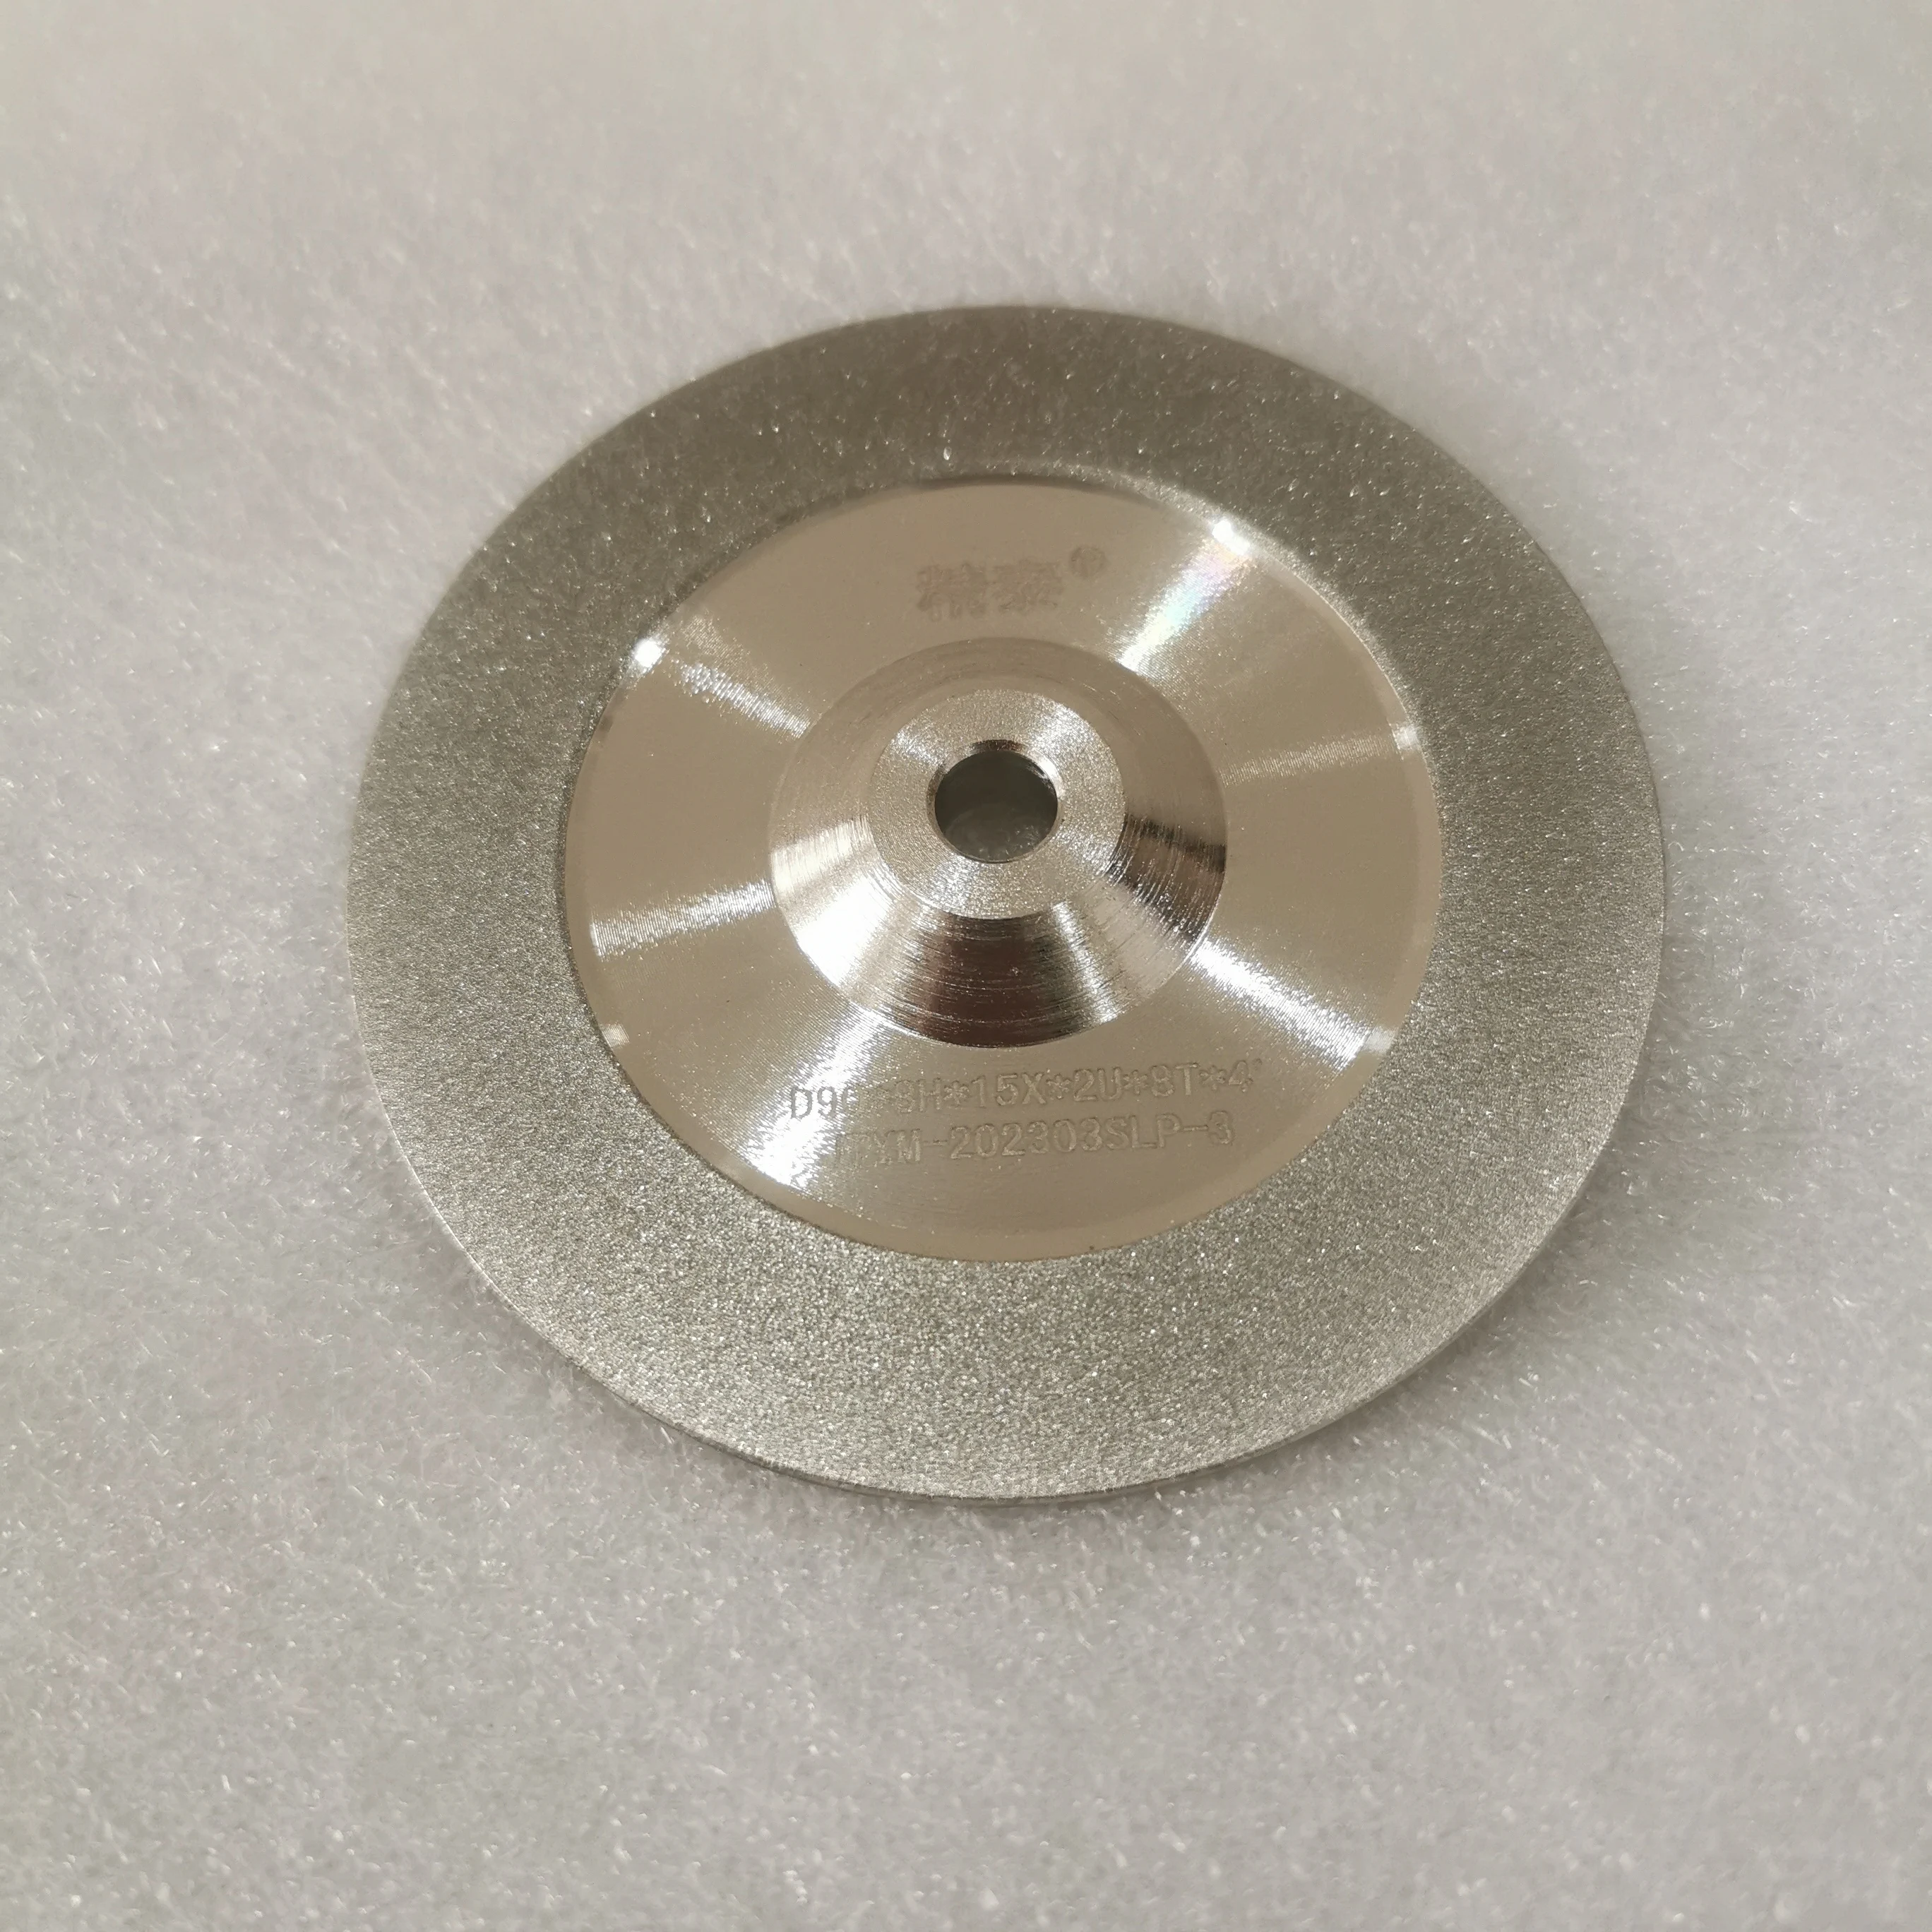 Grinding wheel for TIG Welder Tungsten Electrode Sharpener Grinder tungsten electrode sharpener tungsten needles tungsten rods grinder